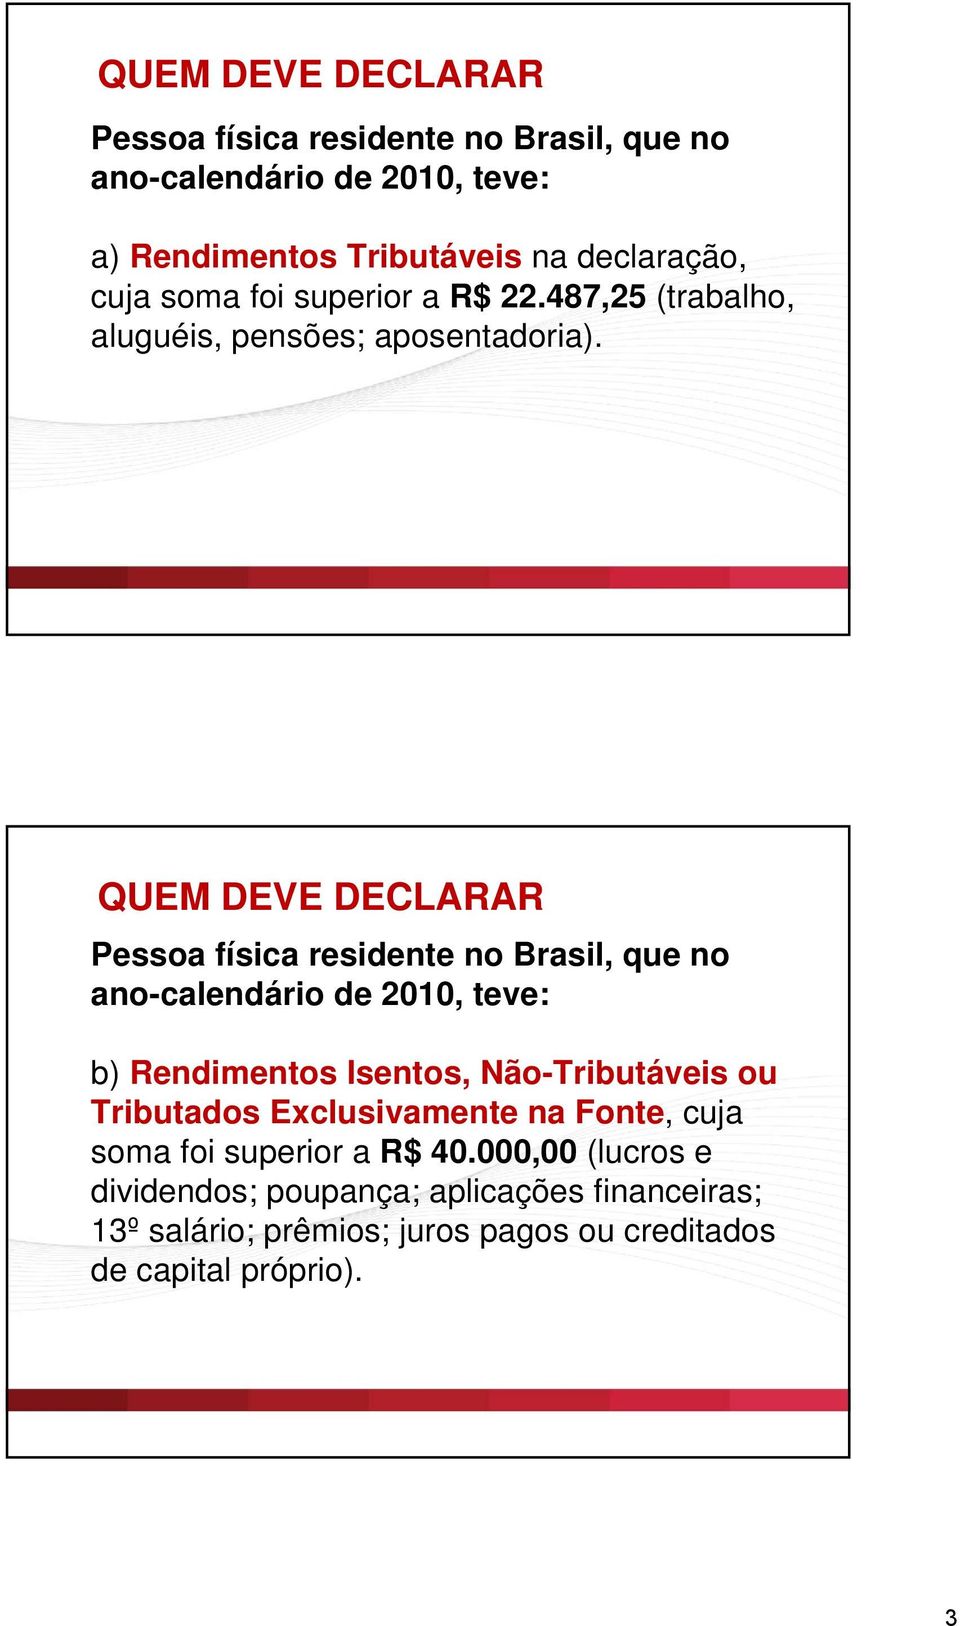 Quem QUEM deve DEVE declarar DECLARAR Pessoa física residente no Brasil, que no ano-calendário de 2010, teve: b) Rendimentos Isentos,